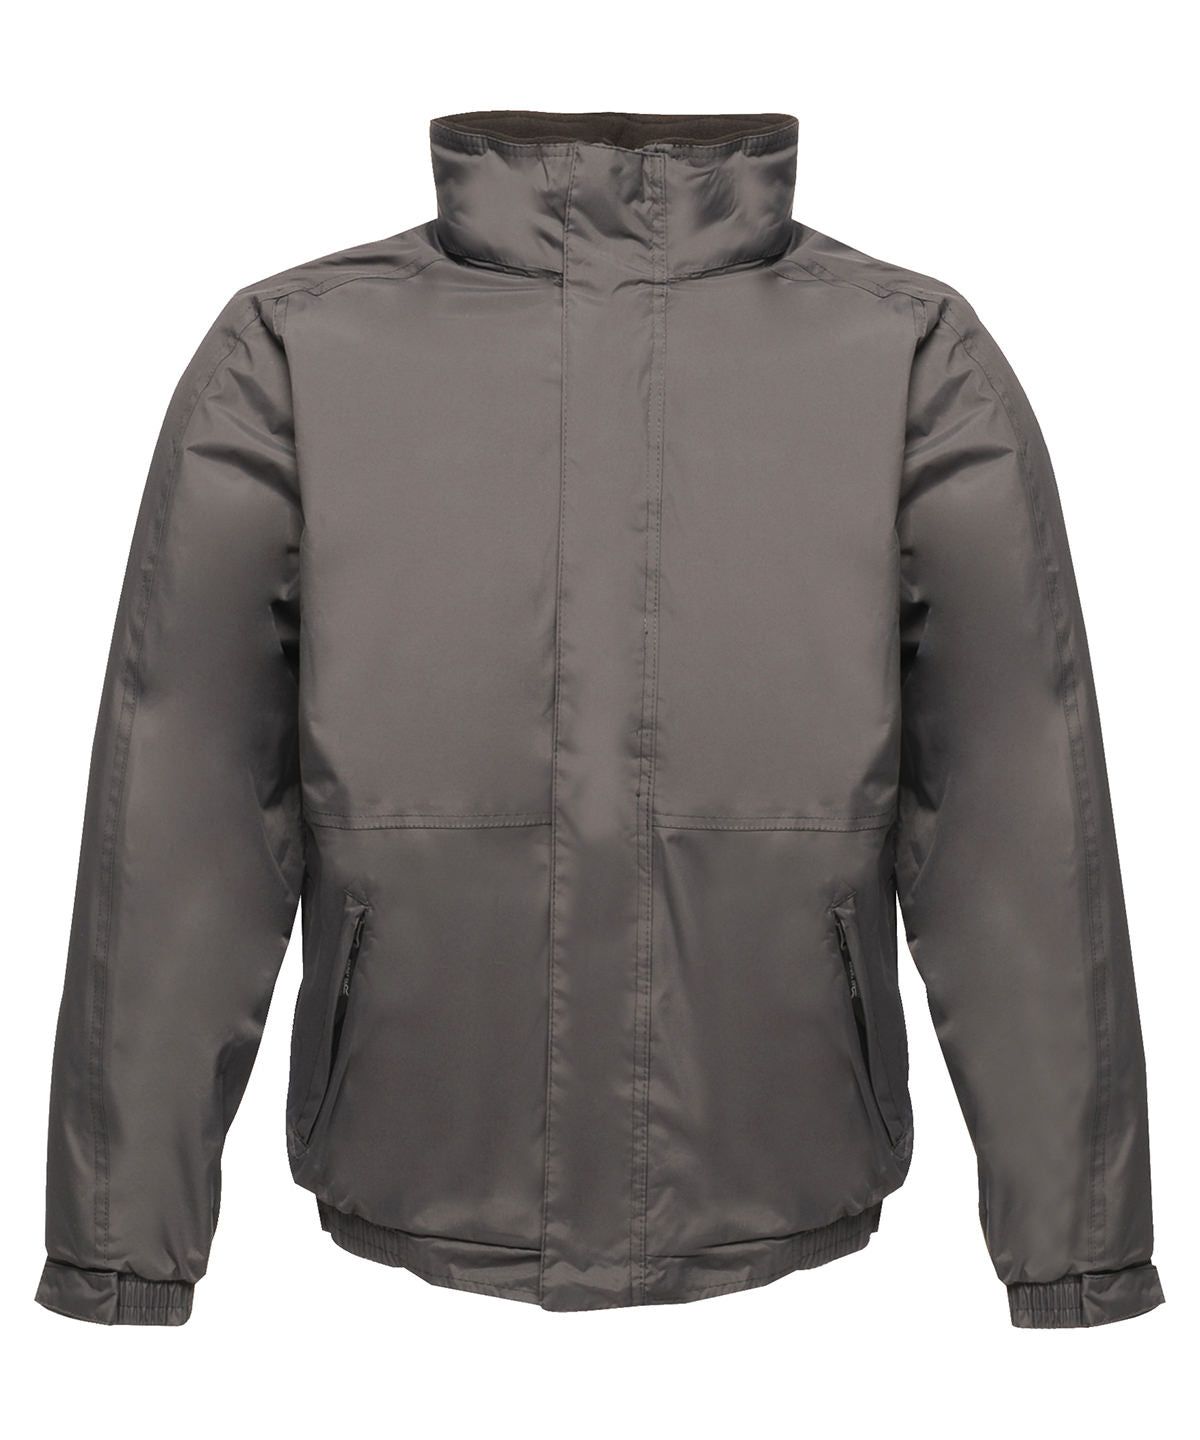 Regatta Dover jacket Seal Grey/Black